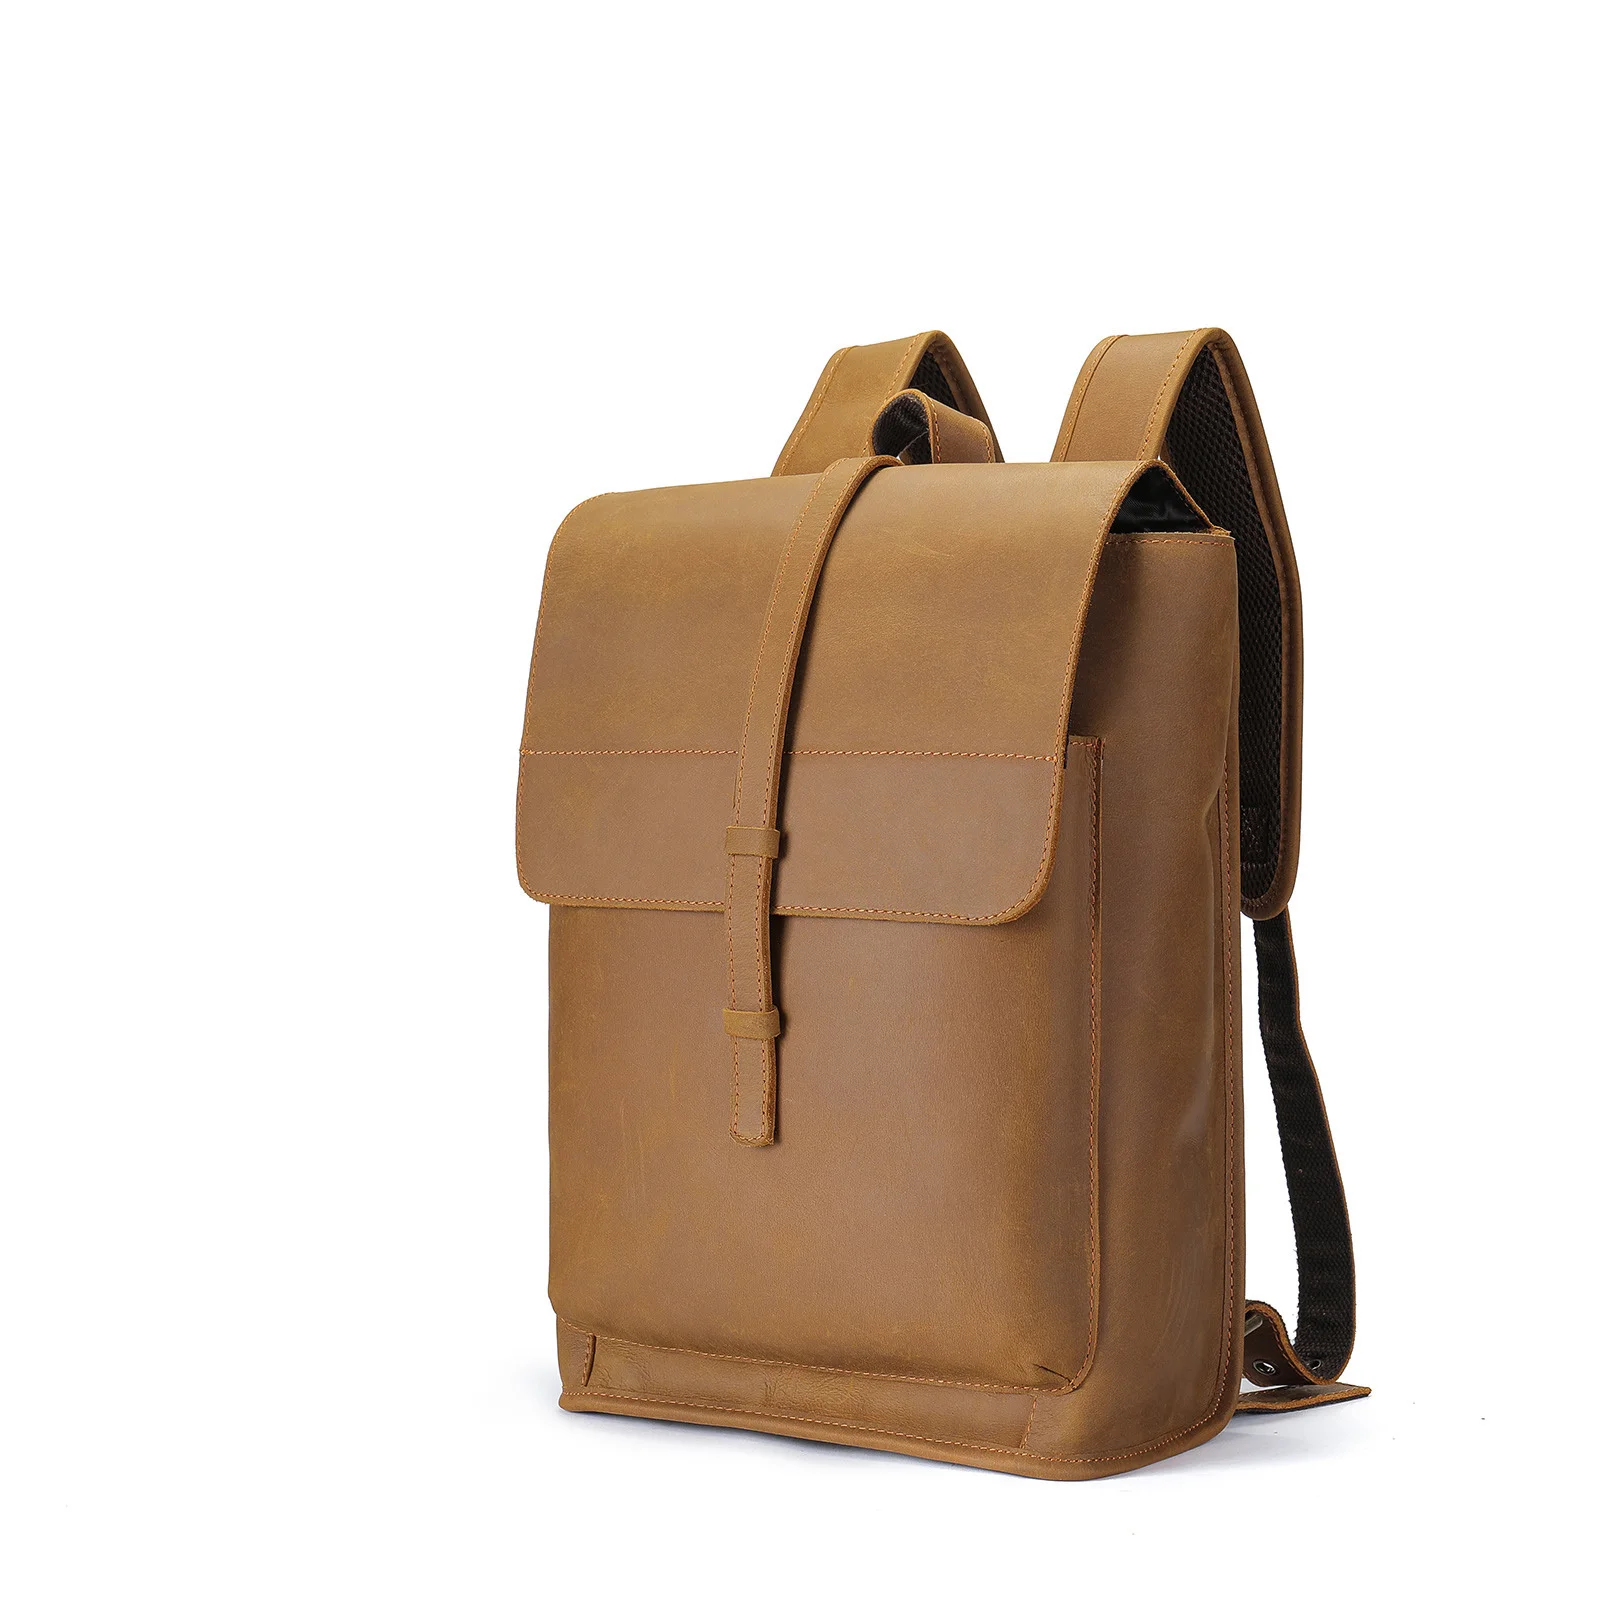 2023, Новые поступления, Винтажный модный рюкзак, 14-дюймовая сумка для компьютера, мужской рюкзак, кожаный школьный ранец для учащихся средней школы, ins hot